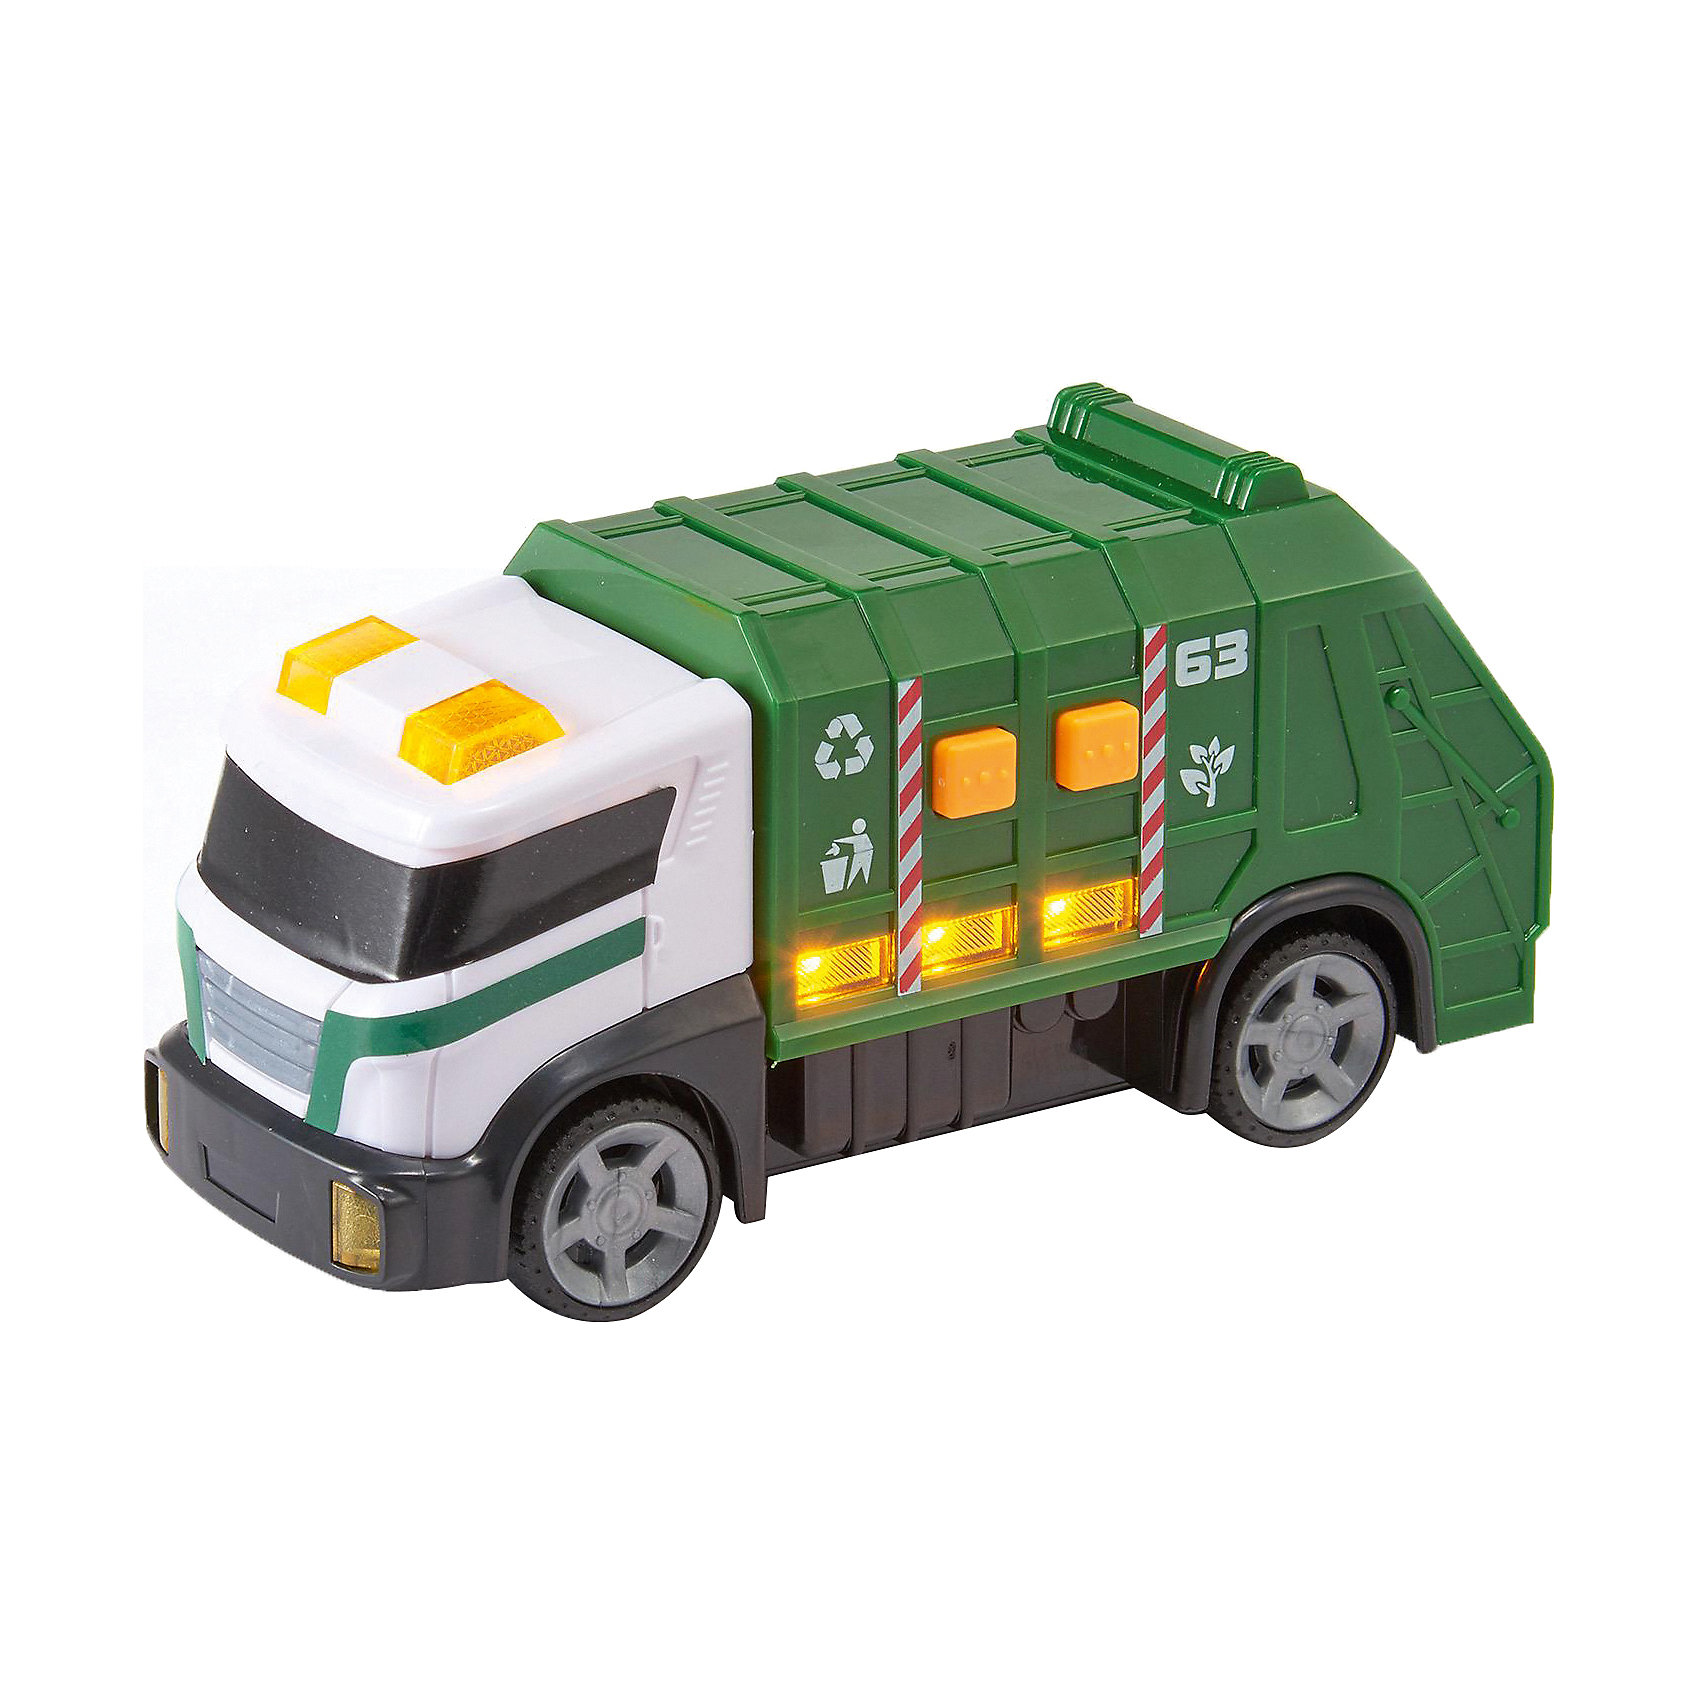 Мусоровоз зеленый. Teamsterz машинки мусоровоз. Машинки HTI мини мусоровоз. Машинка "мусоровоз", 15 см. Мусоровоз зеленый игрушка.